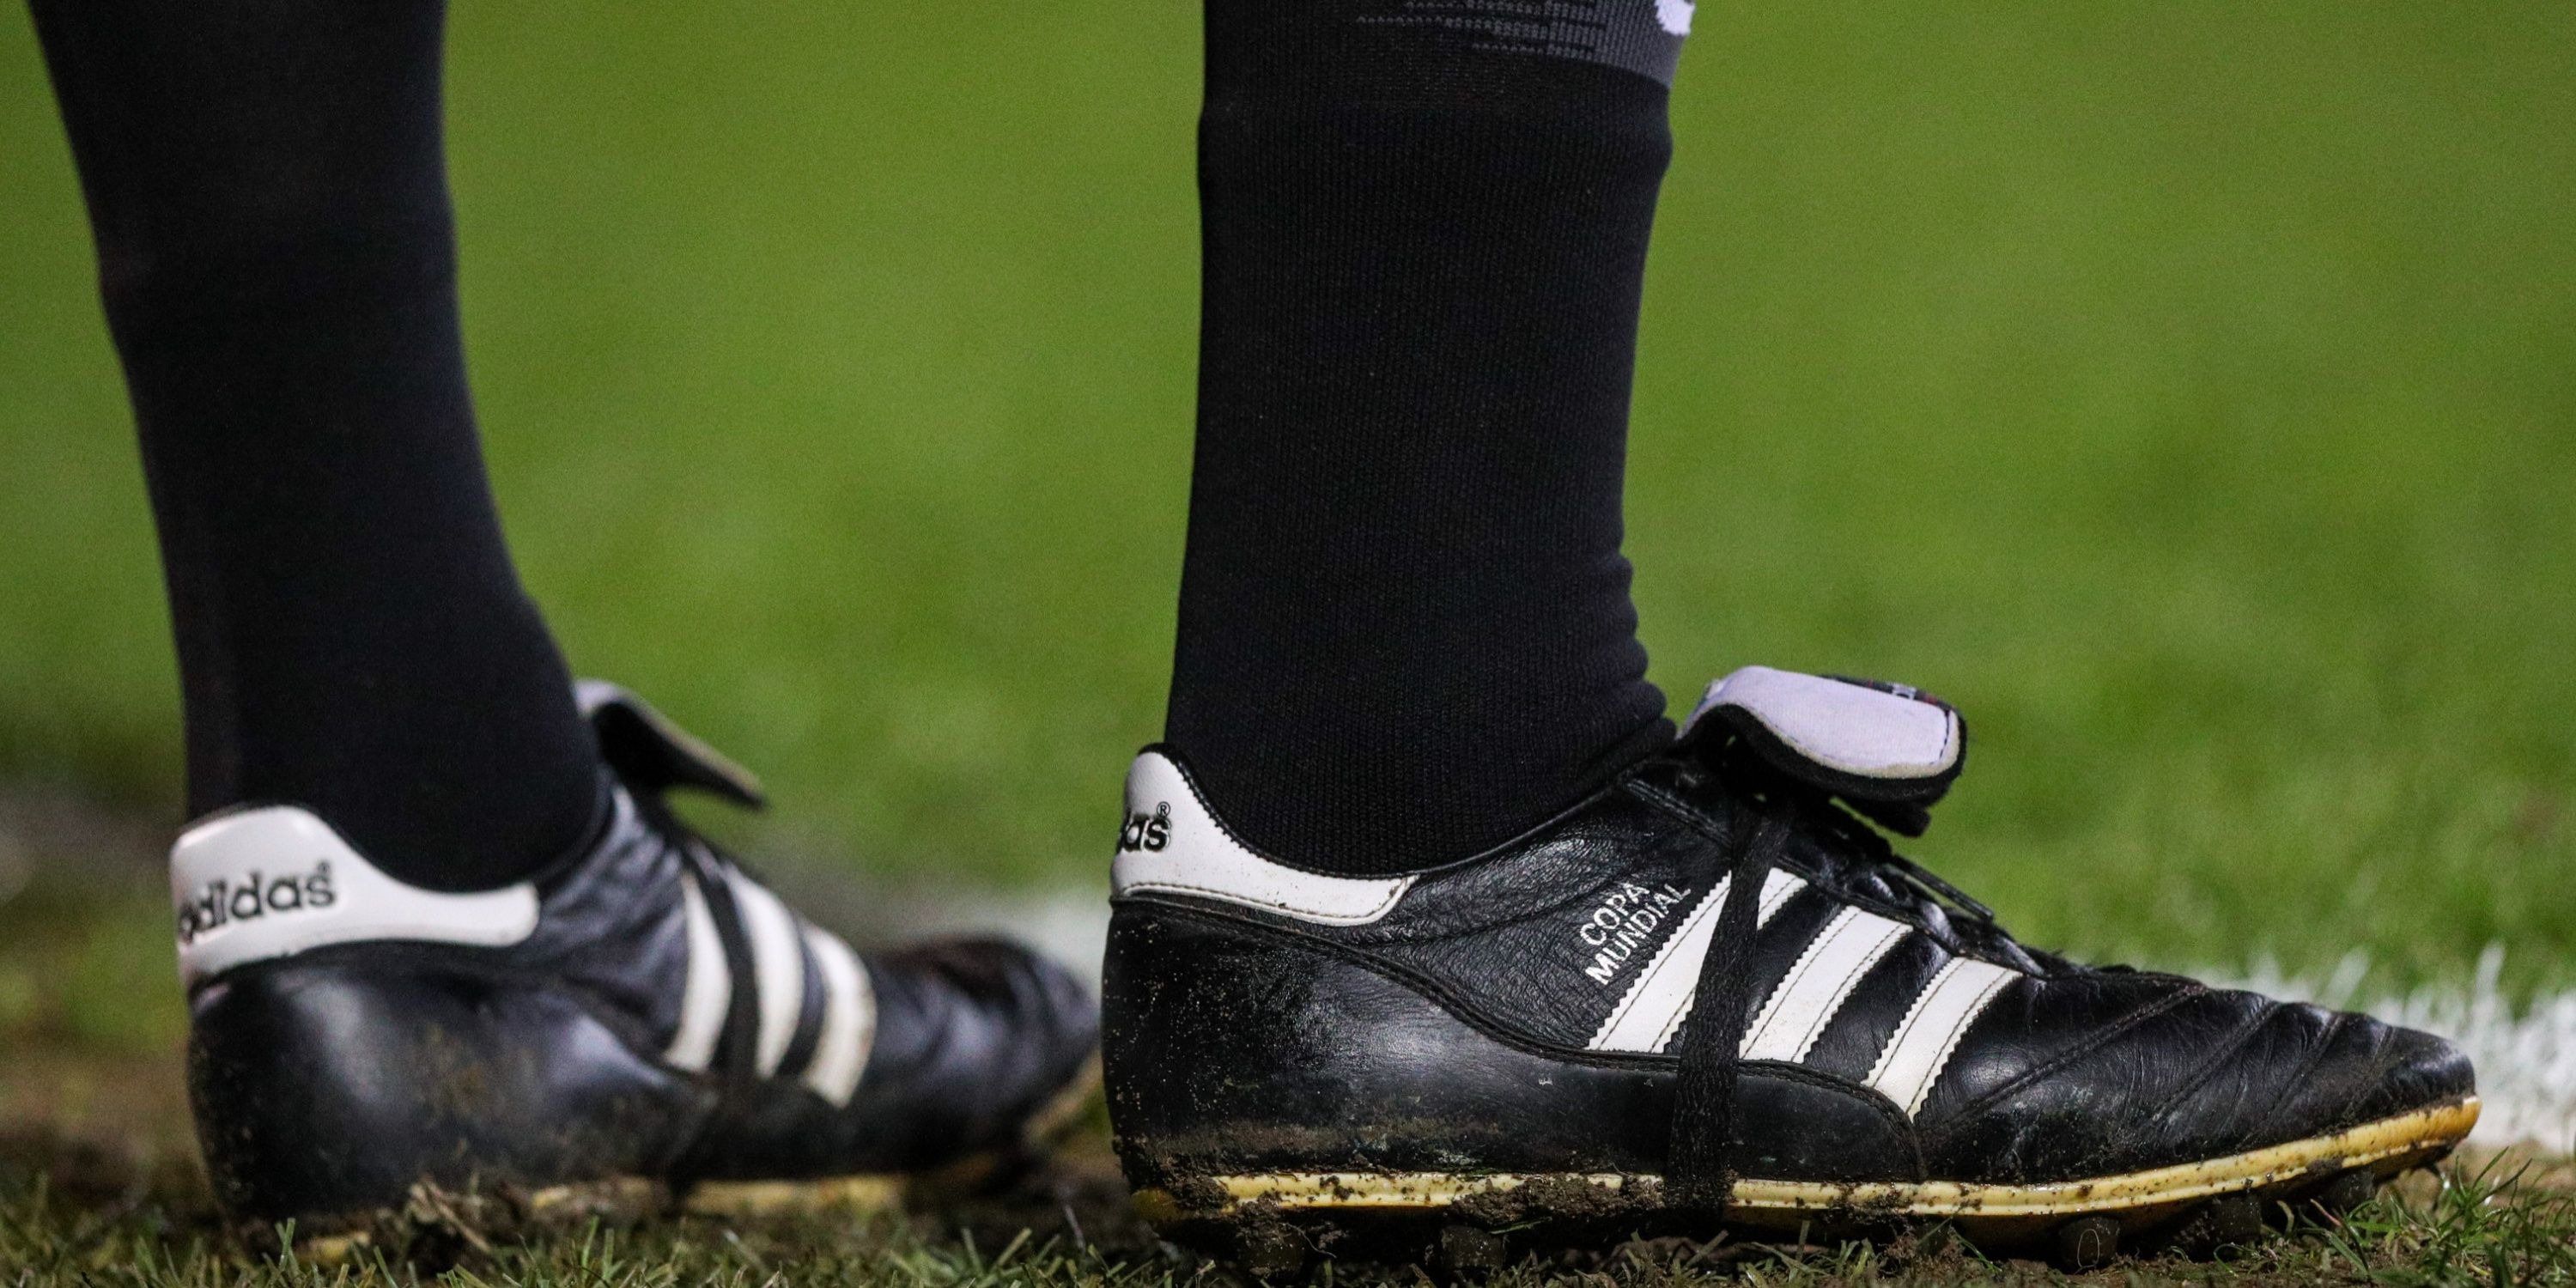 Nivia Encounter Football Shoes for Mens | sppartos